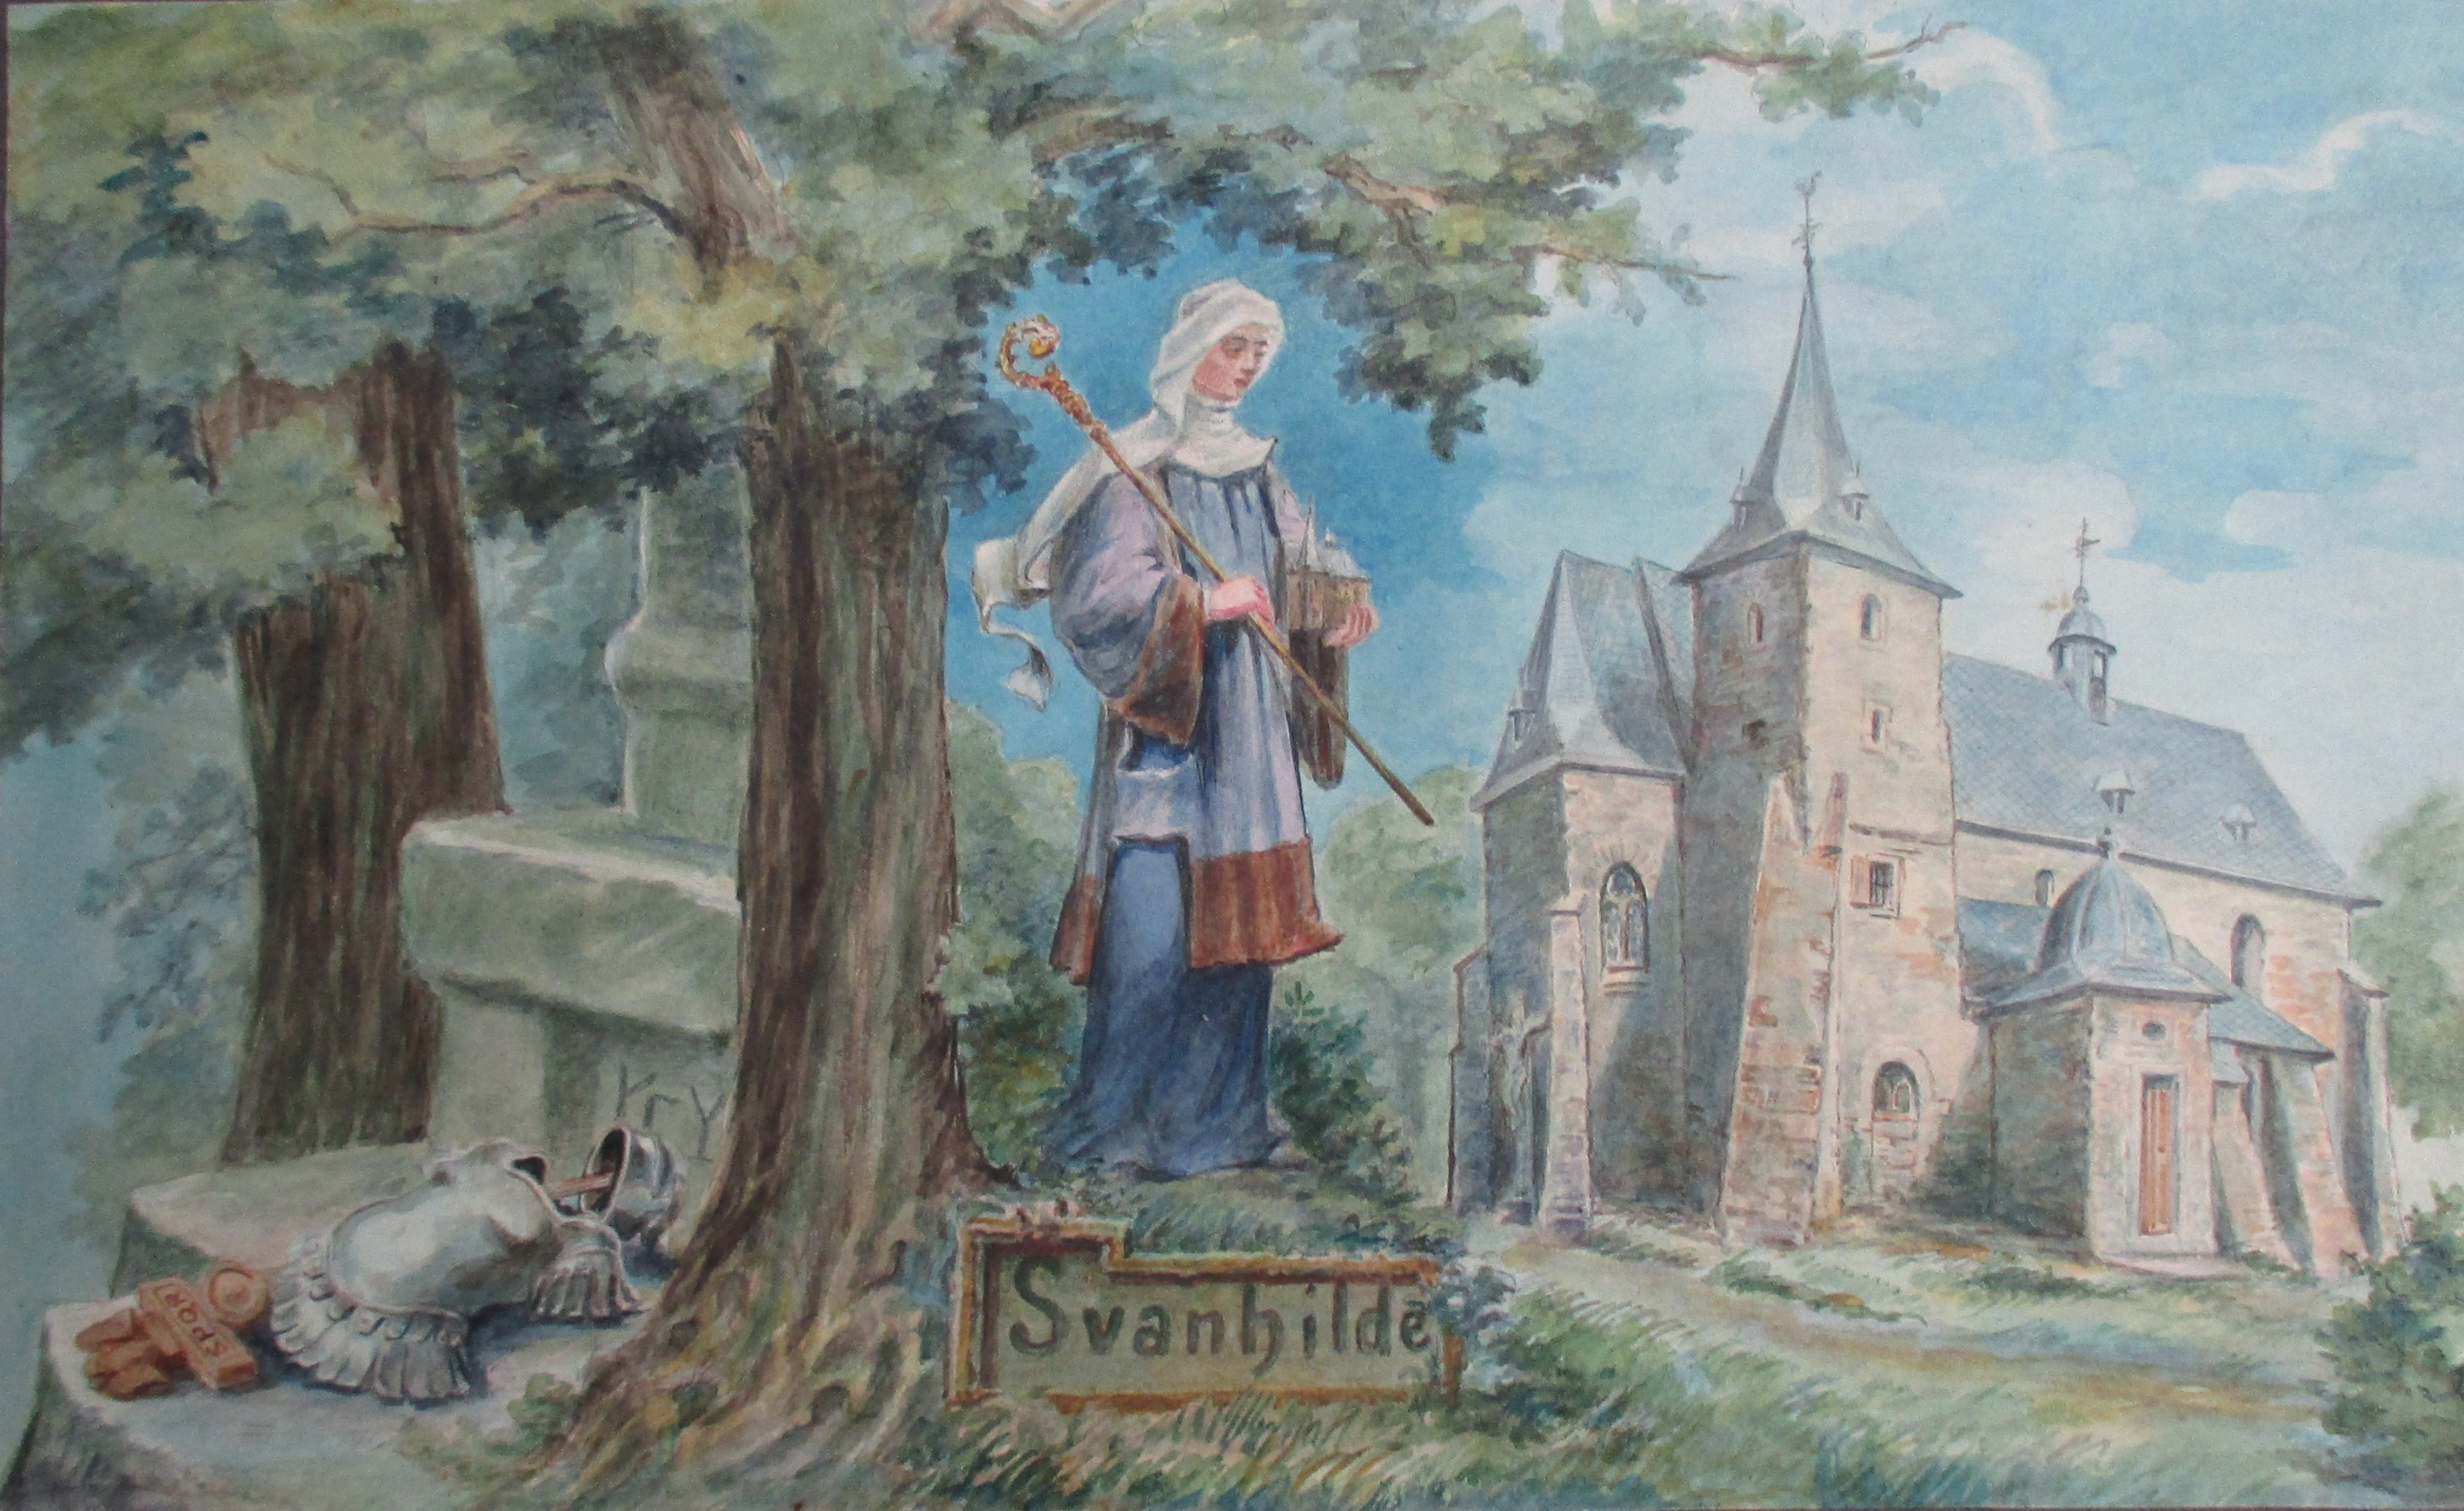 Illustration zu der Sage von Svanhilde (Deutsches Märchen- und Wesersagenmuseum CC BY-NC-SA)